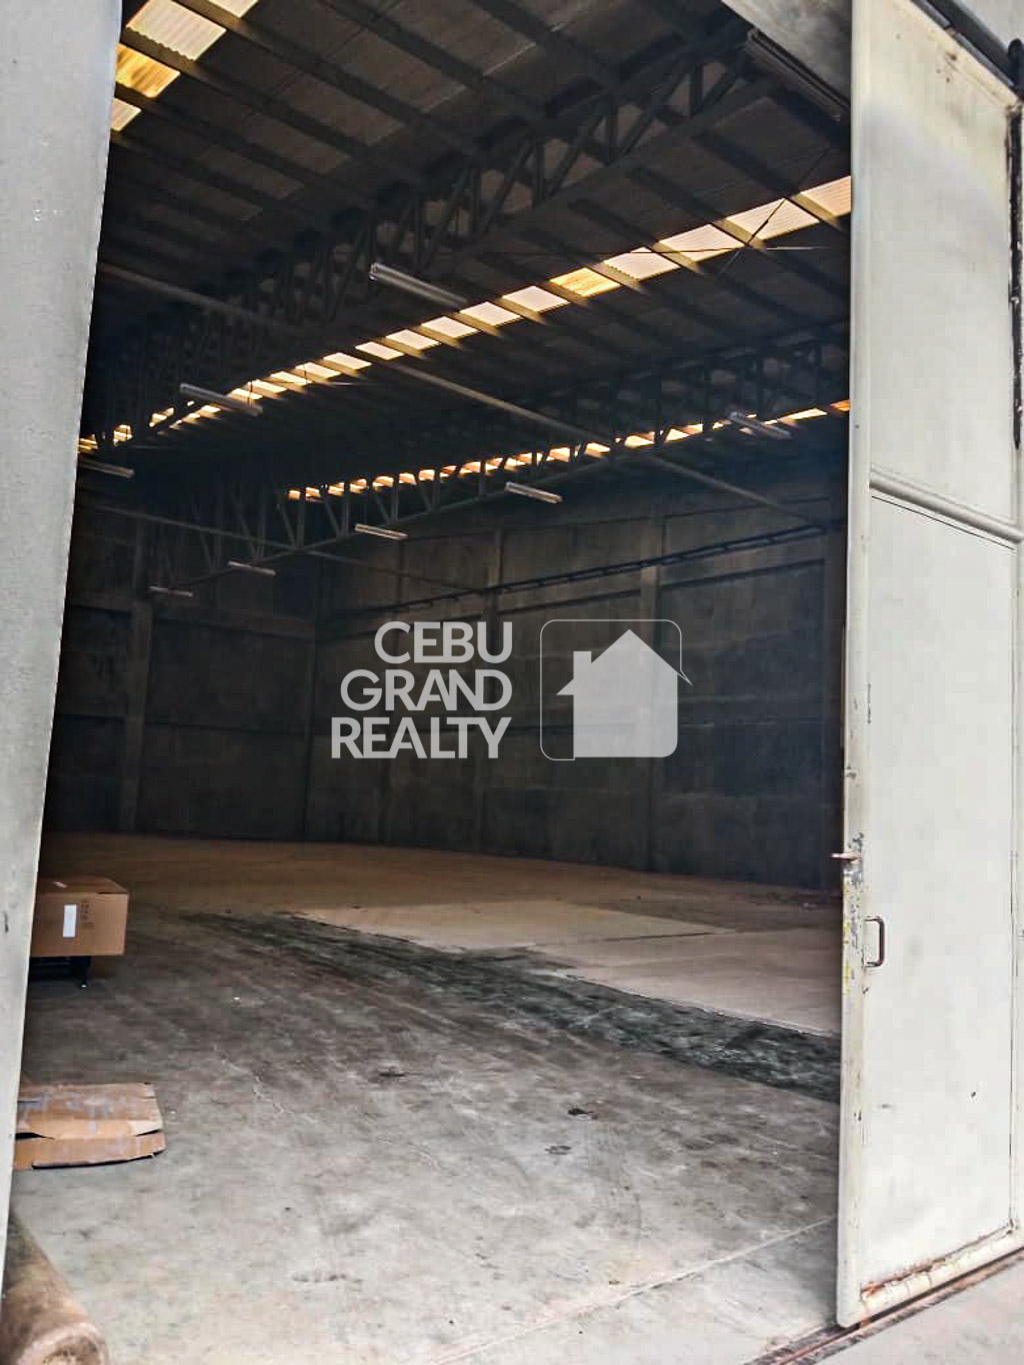 RCP204C 2949 SqM Warehouse for Rent in Mandaue - Cebu Grand Realty (5)